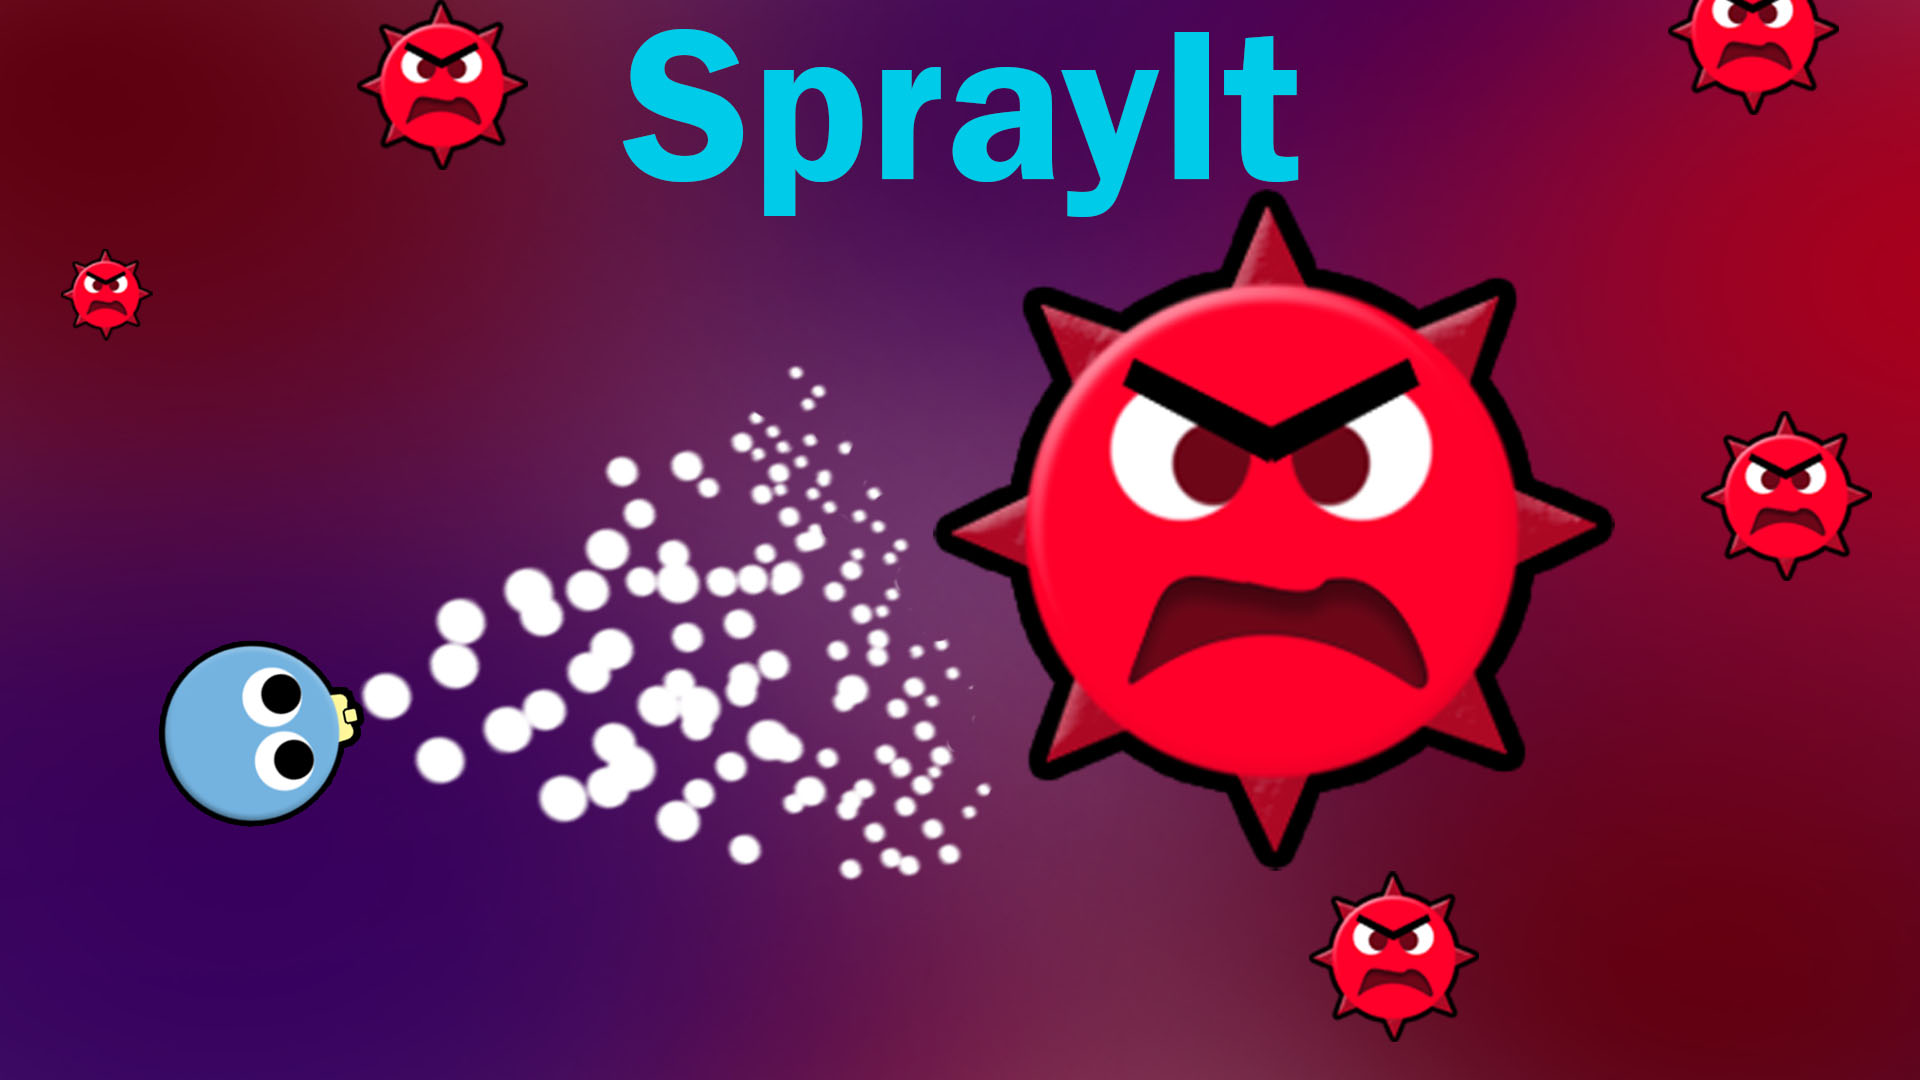 SprayIt